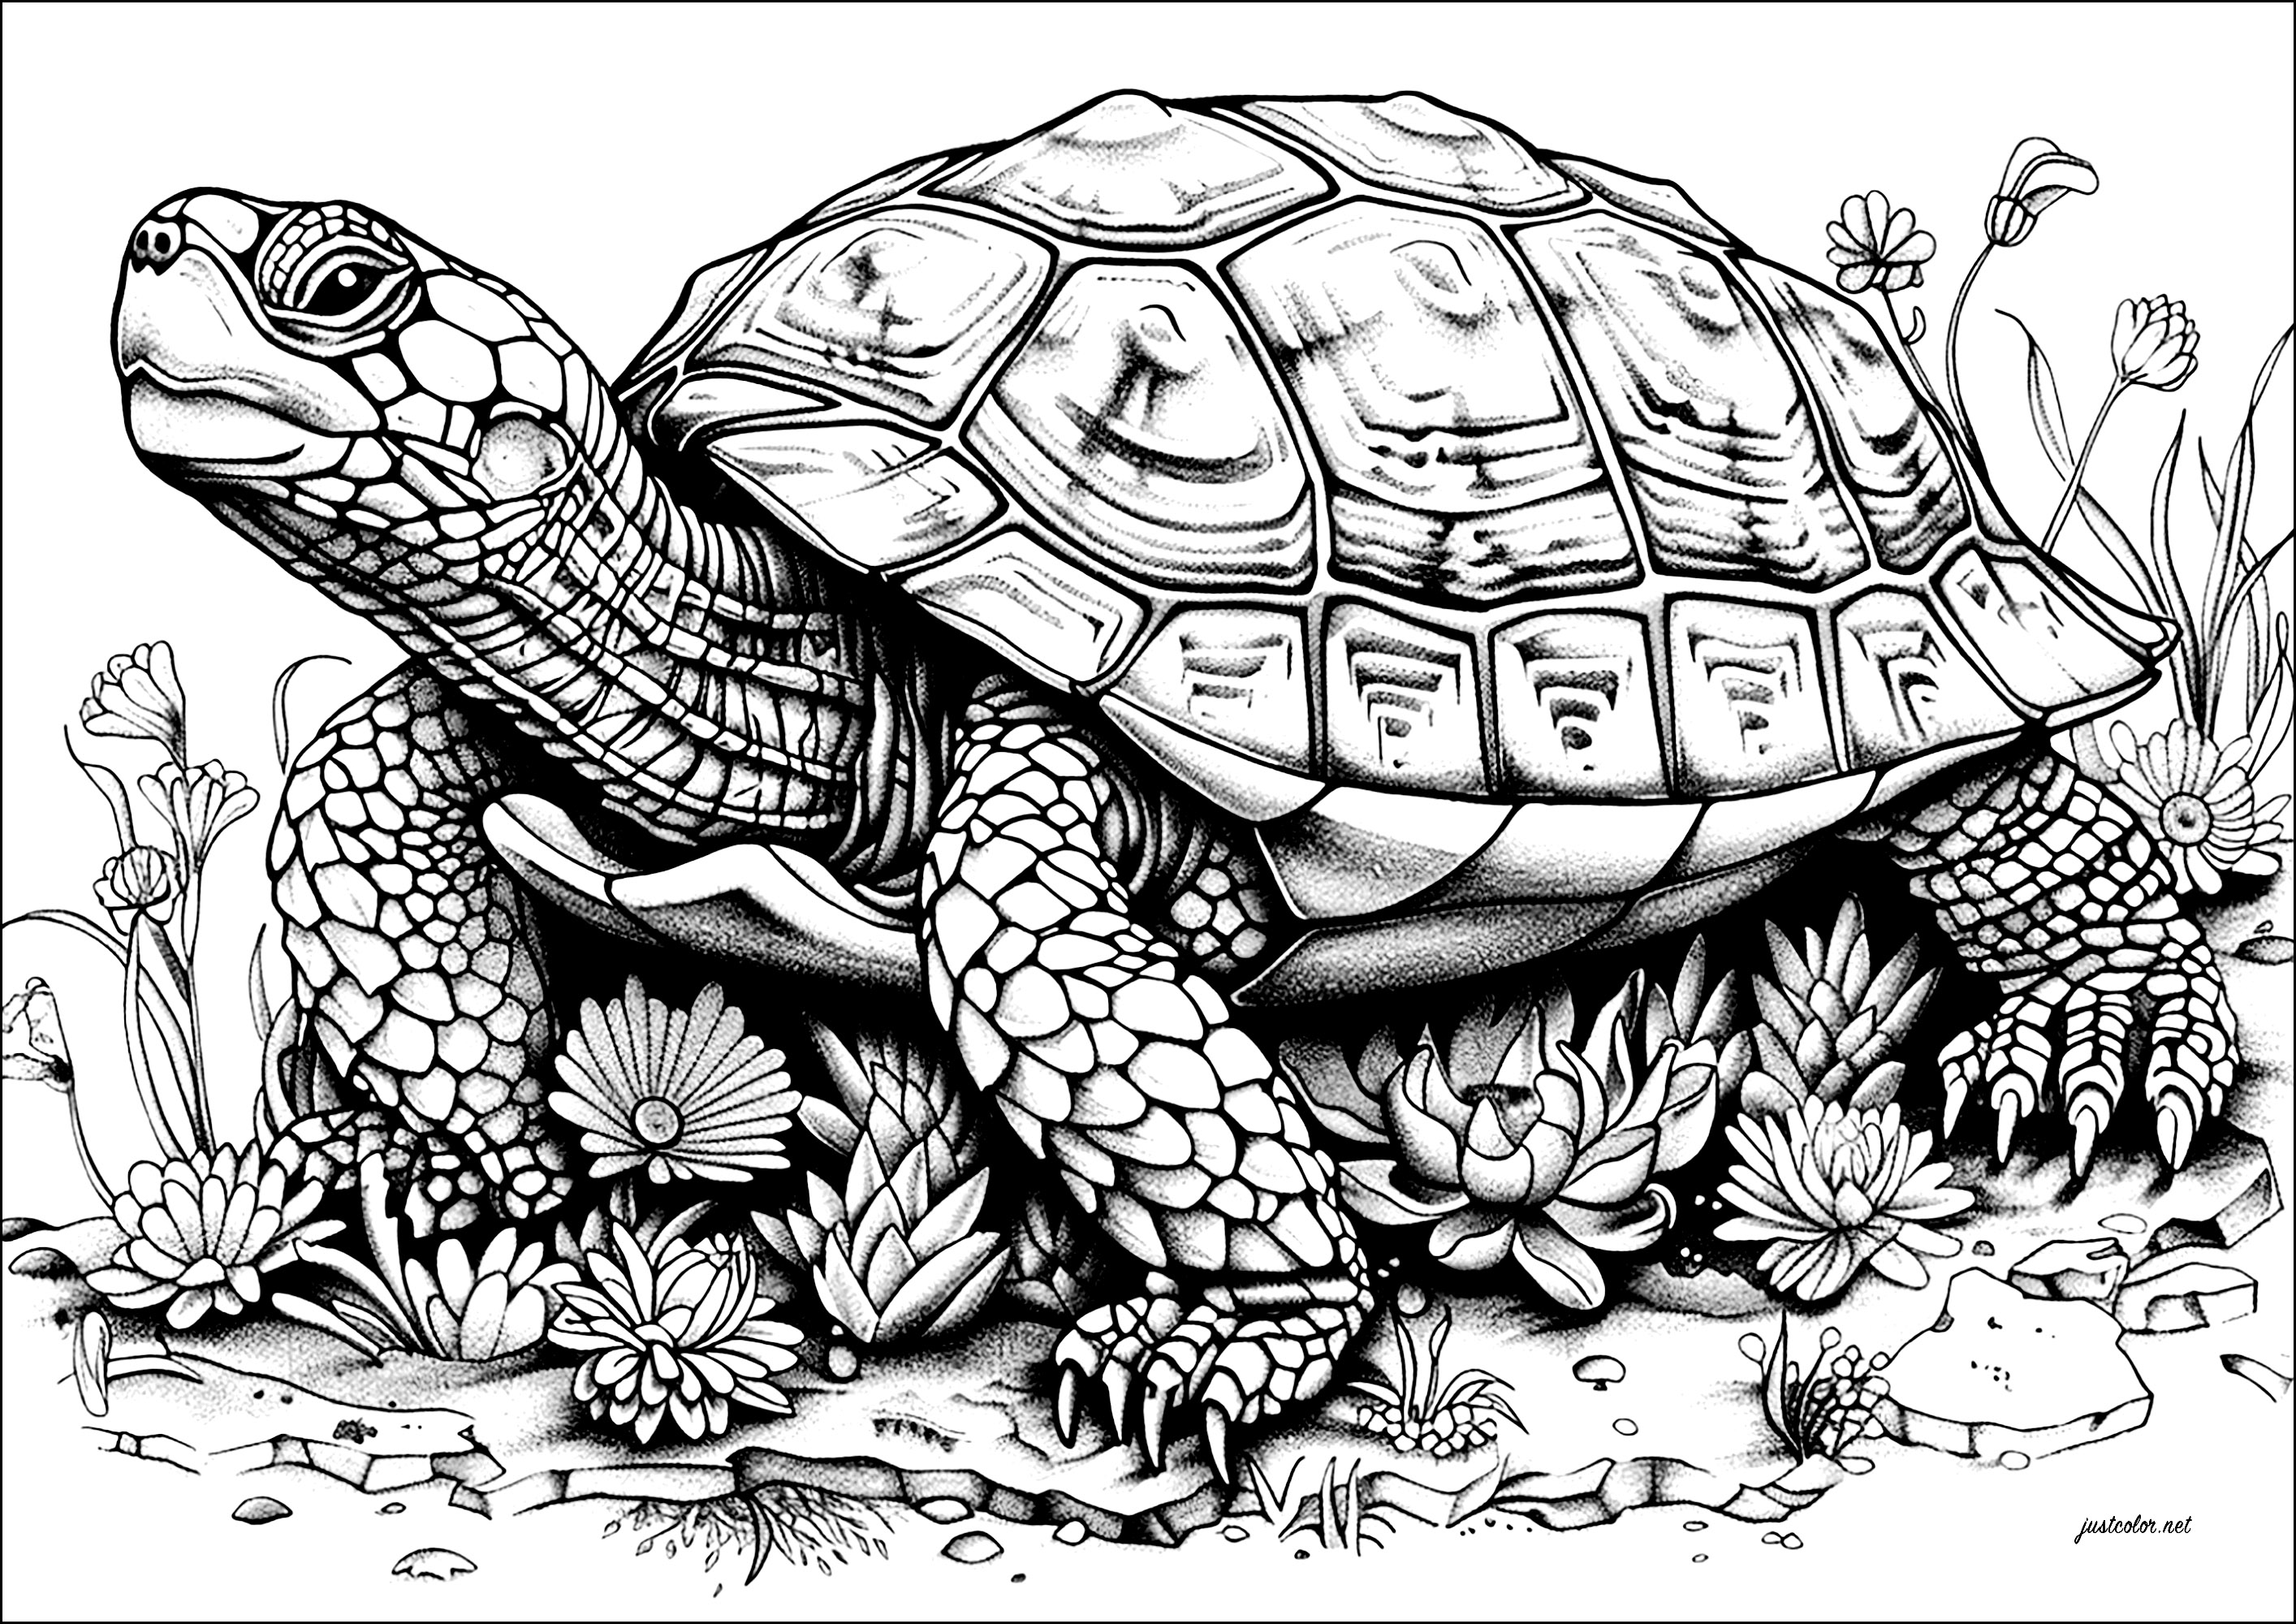 Detailreiche Kolorierung einer großen, sich langsam bewegenden Schildkröte. Der Kopf dieser Schildkröte wird von einem beeindruckenden Panzer gekrönt, der mit komplizierten Mustern verziert ist, die du gerne ausmalen wirst.Sie bewegt sich langsam vorwärts, als würde sie das Gewicht der Welt auf ihrem Rücken tragen.